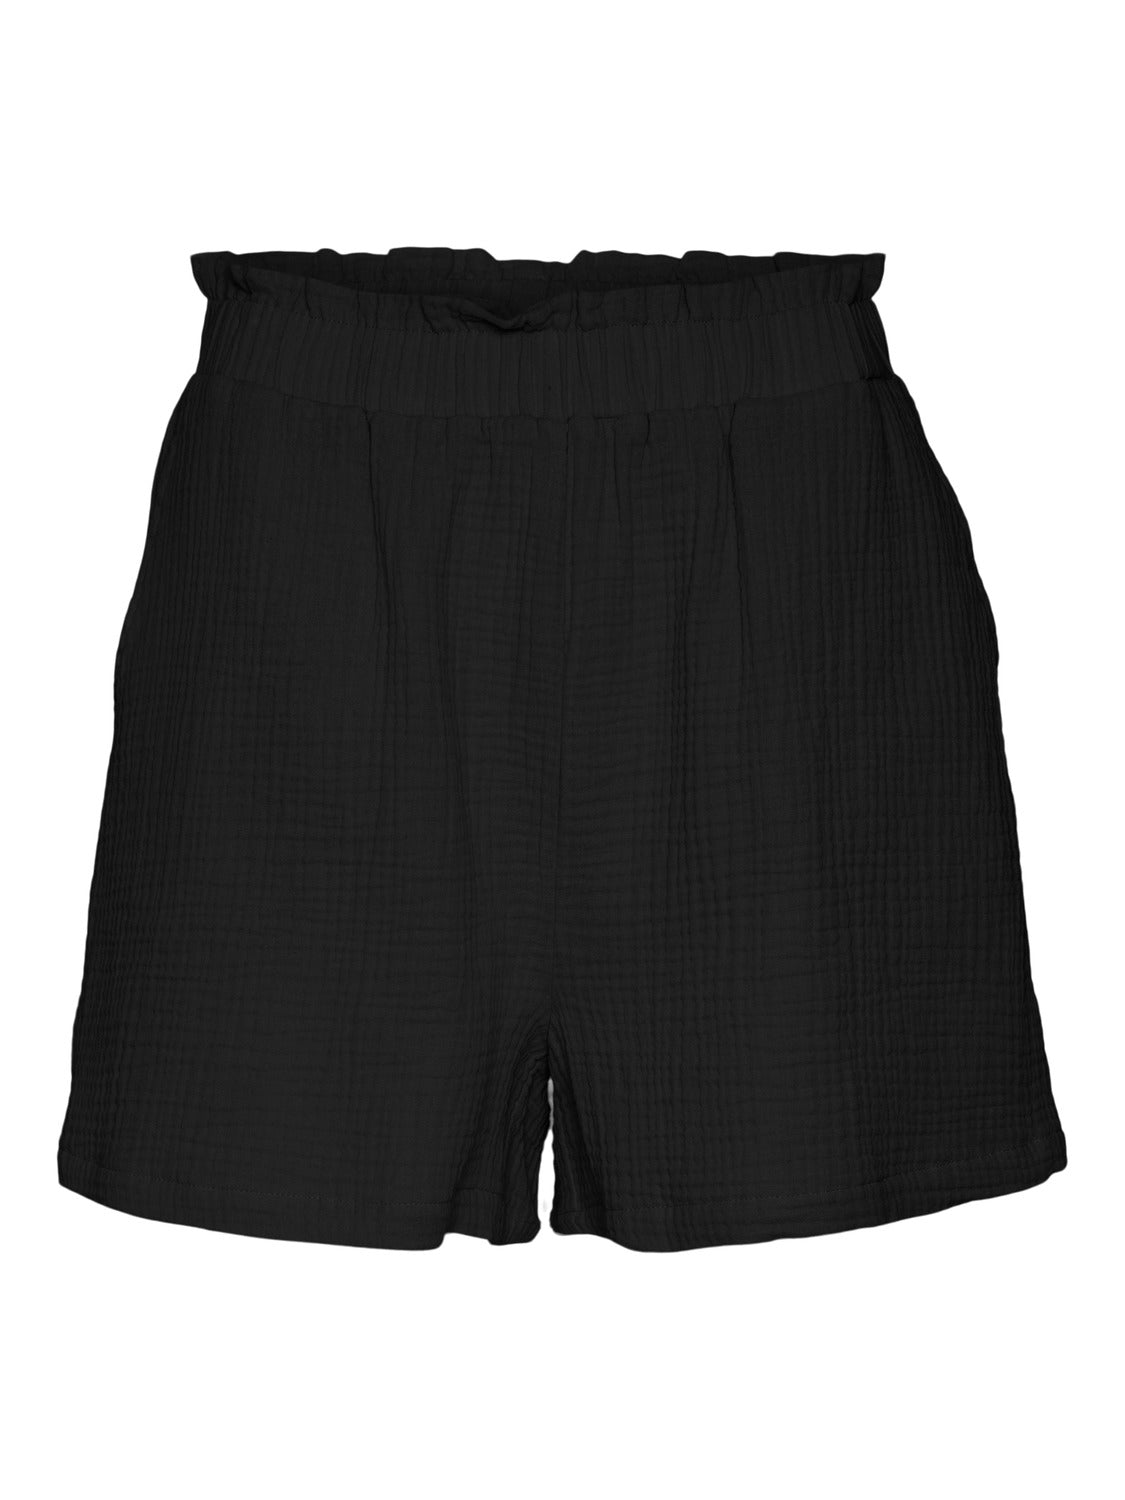 VMNATALI Shorts - Black